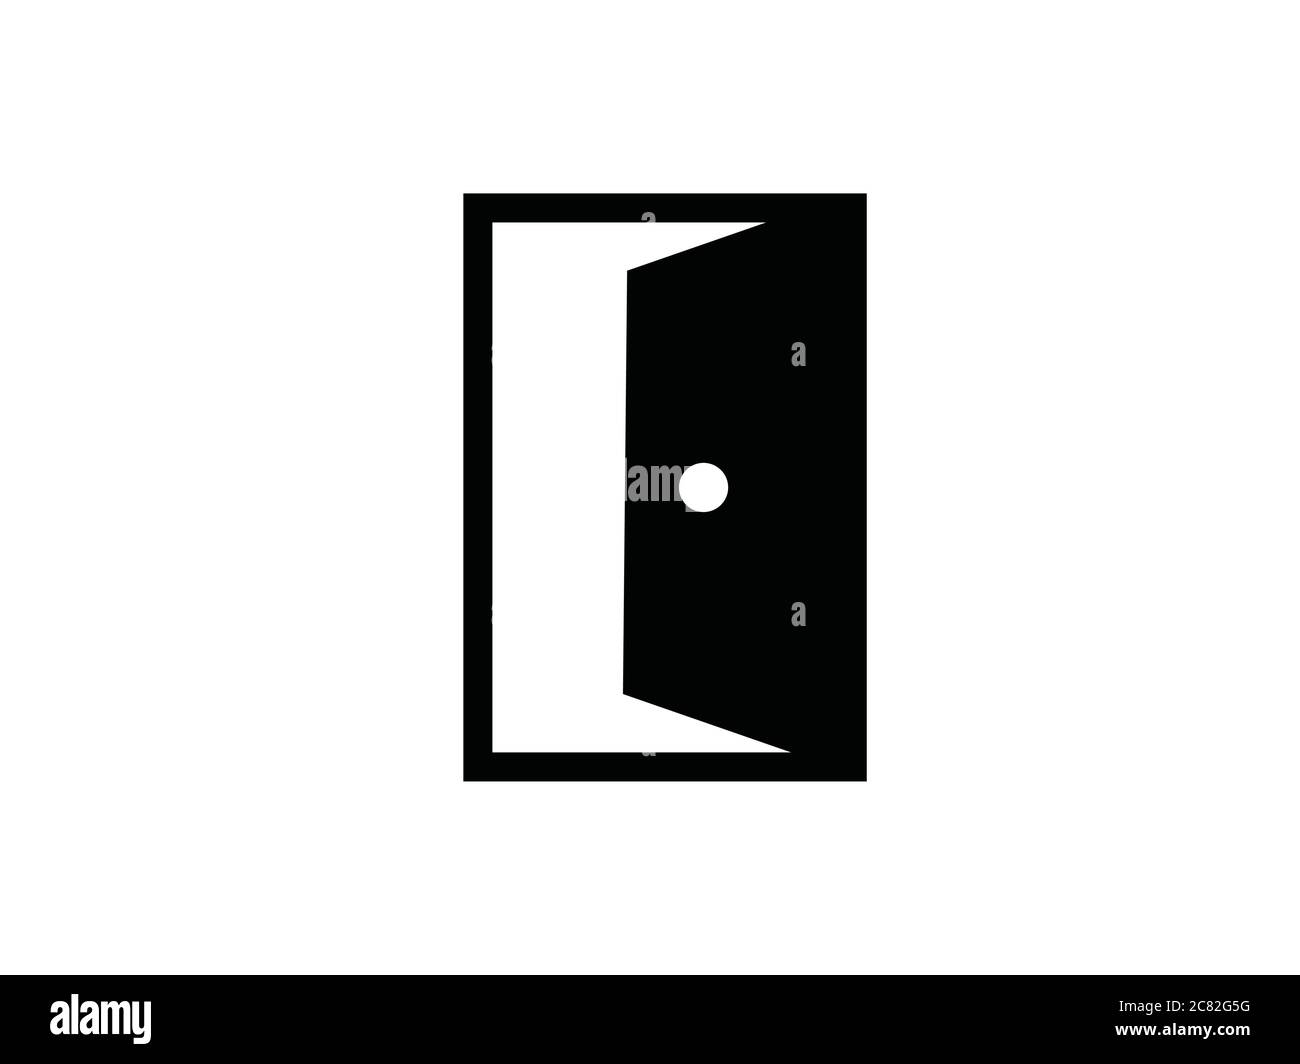 Door gate open symbol vector illustration Stock Vector